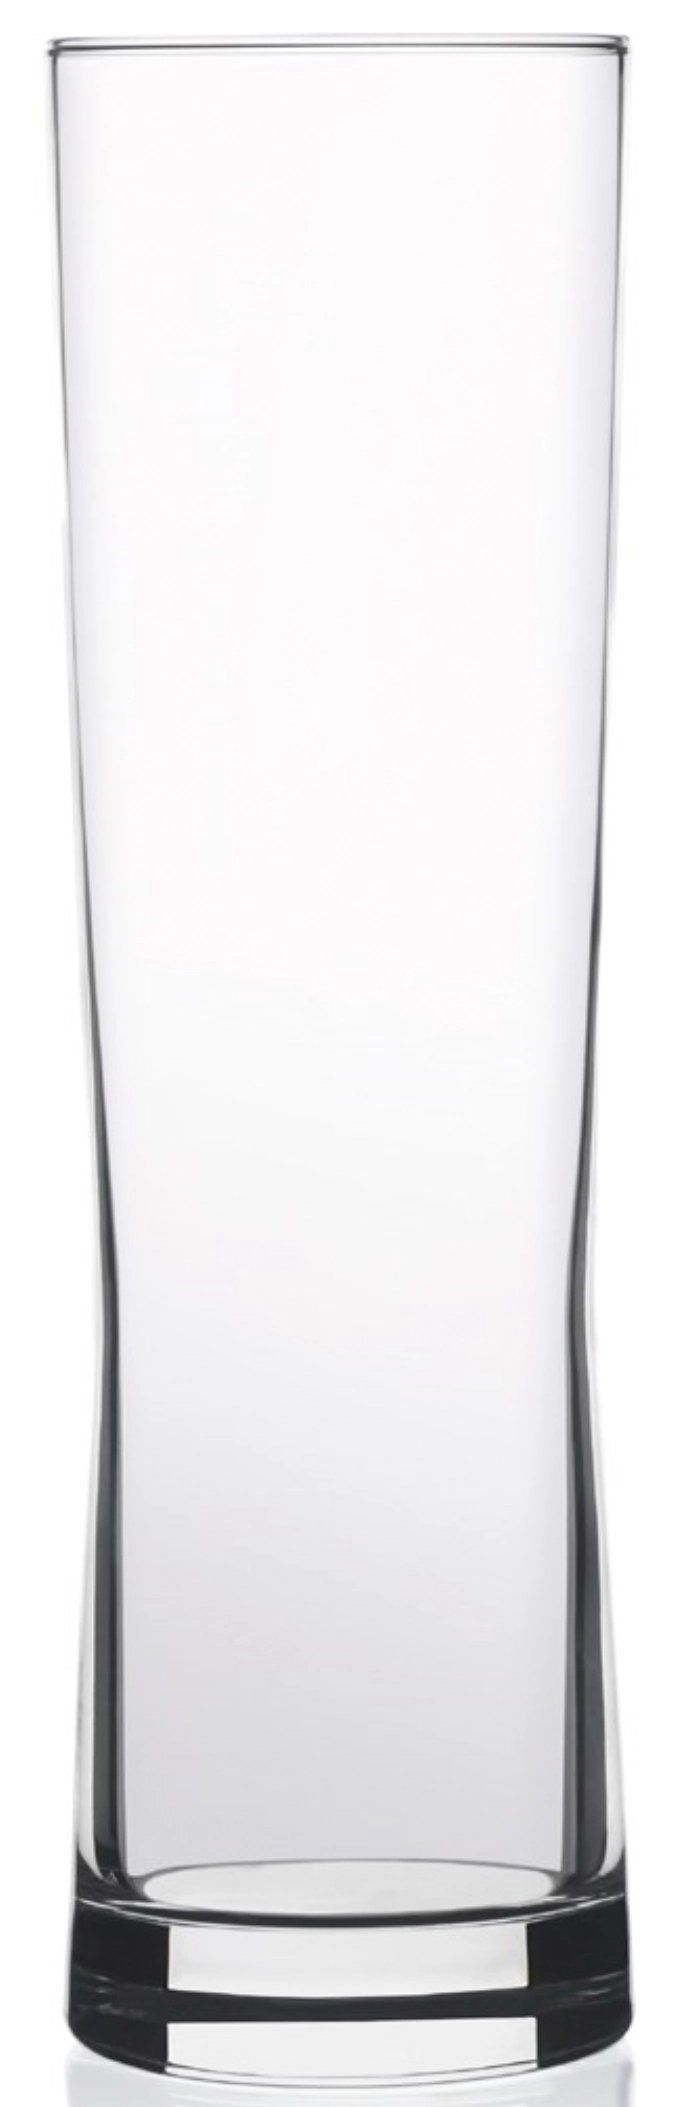 Fresh Glas - Becher 37cl, 3dl. /0/ 20.1cm